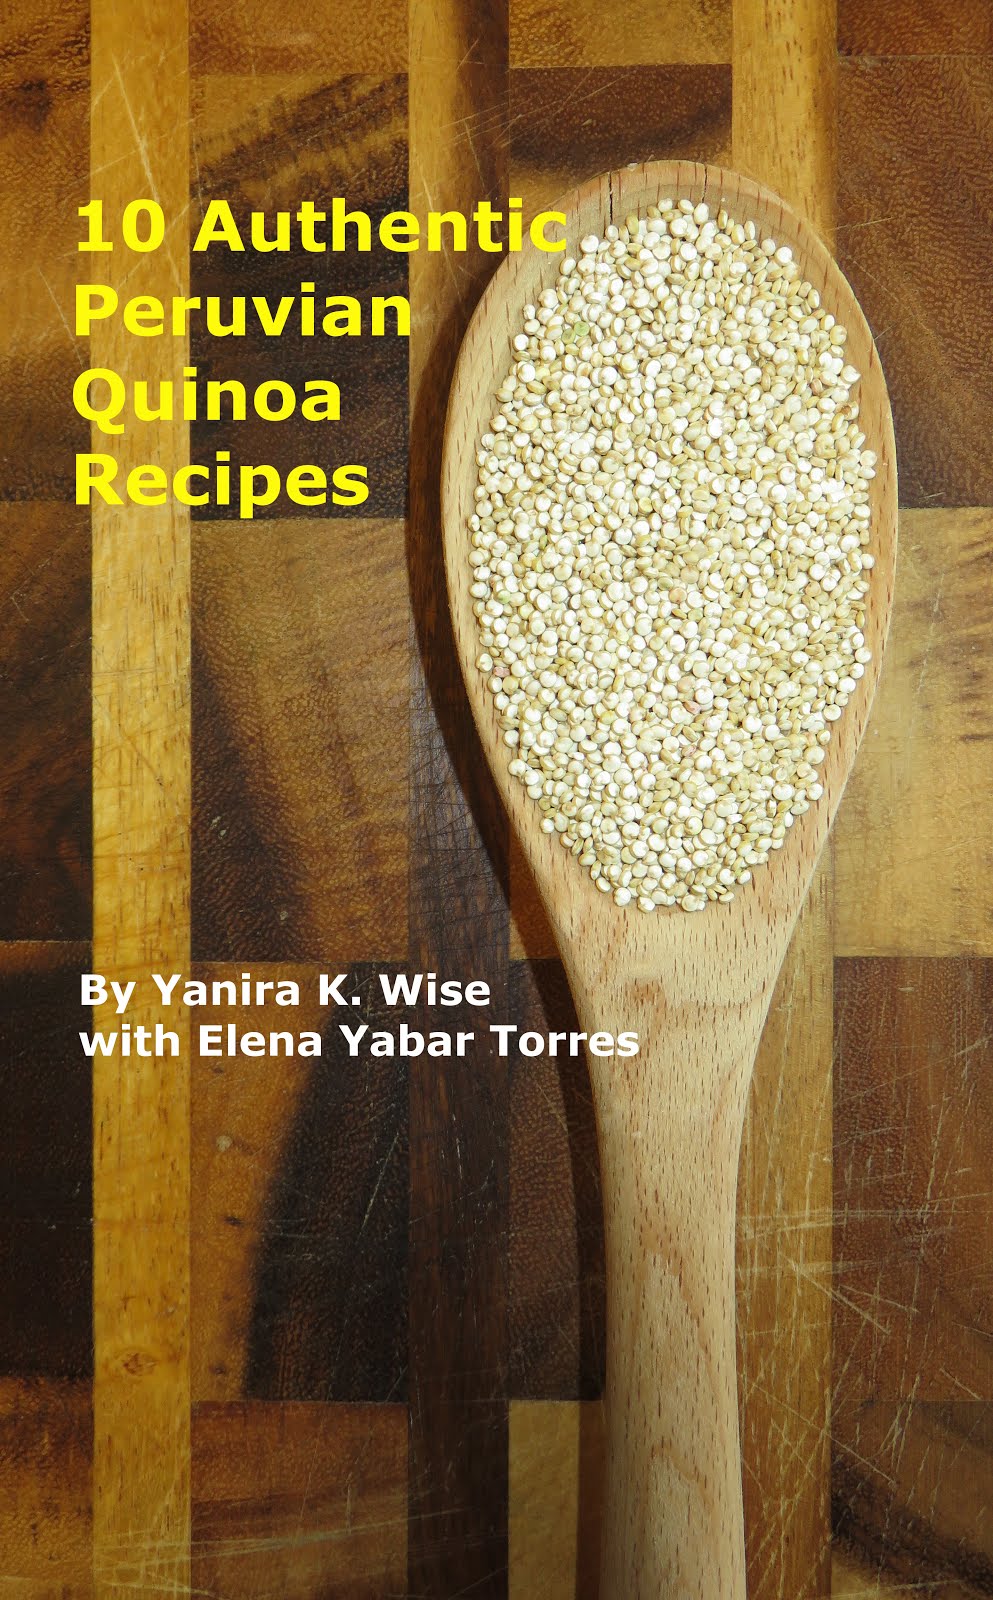 10 Authentic Peruvian Quinoa Recipes